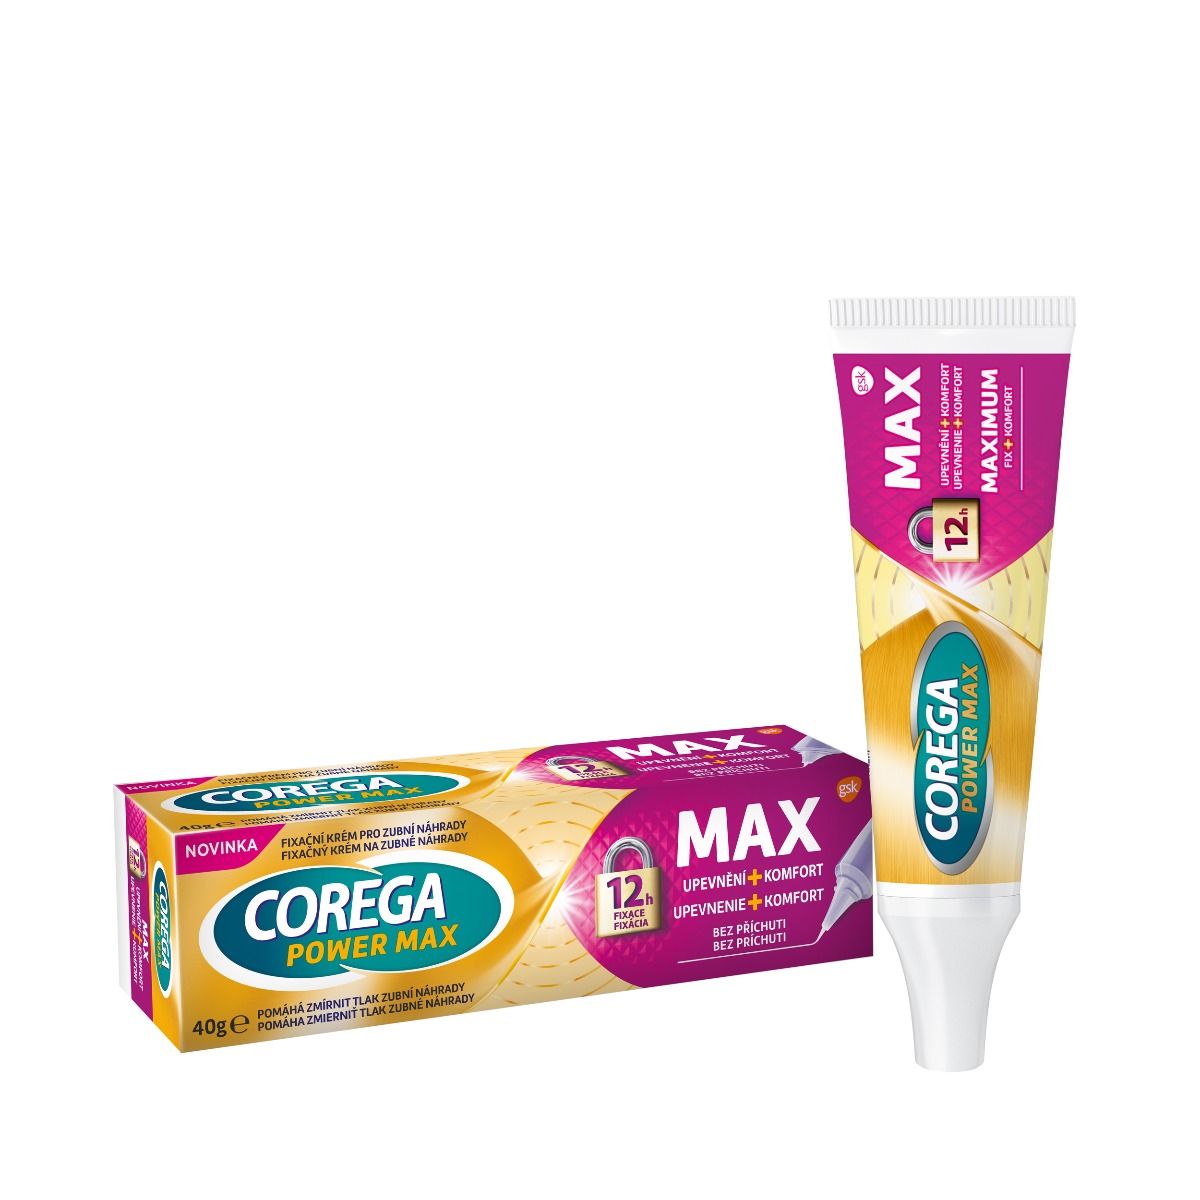 Corega Power Max upevnění a komfort fixační krém 40 g Corega